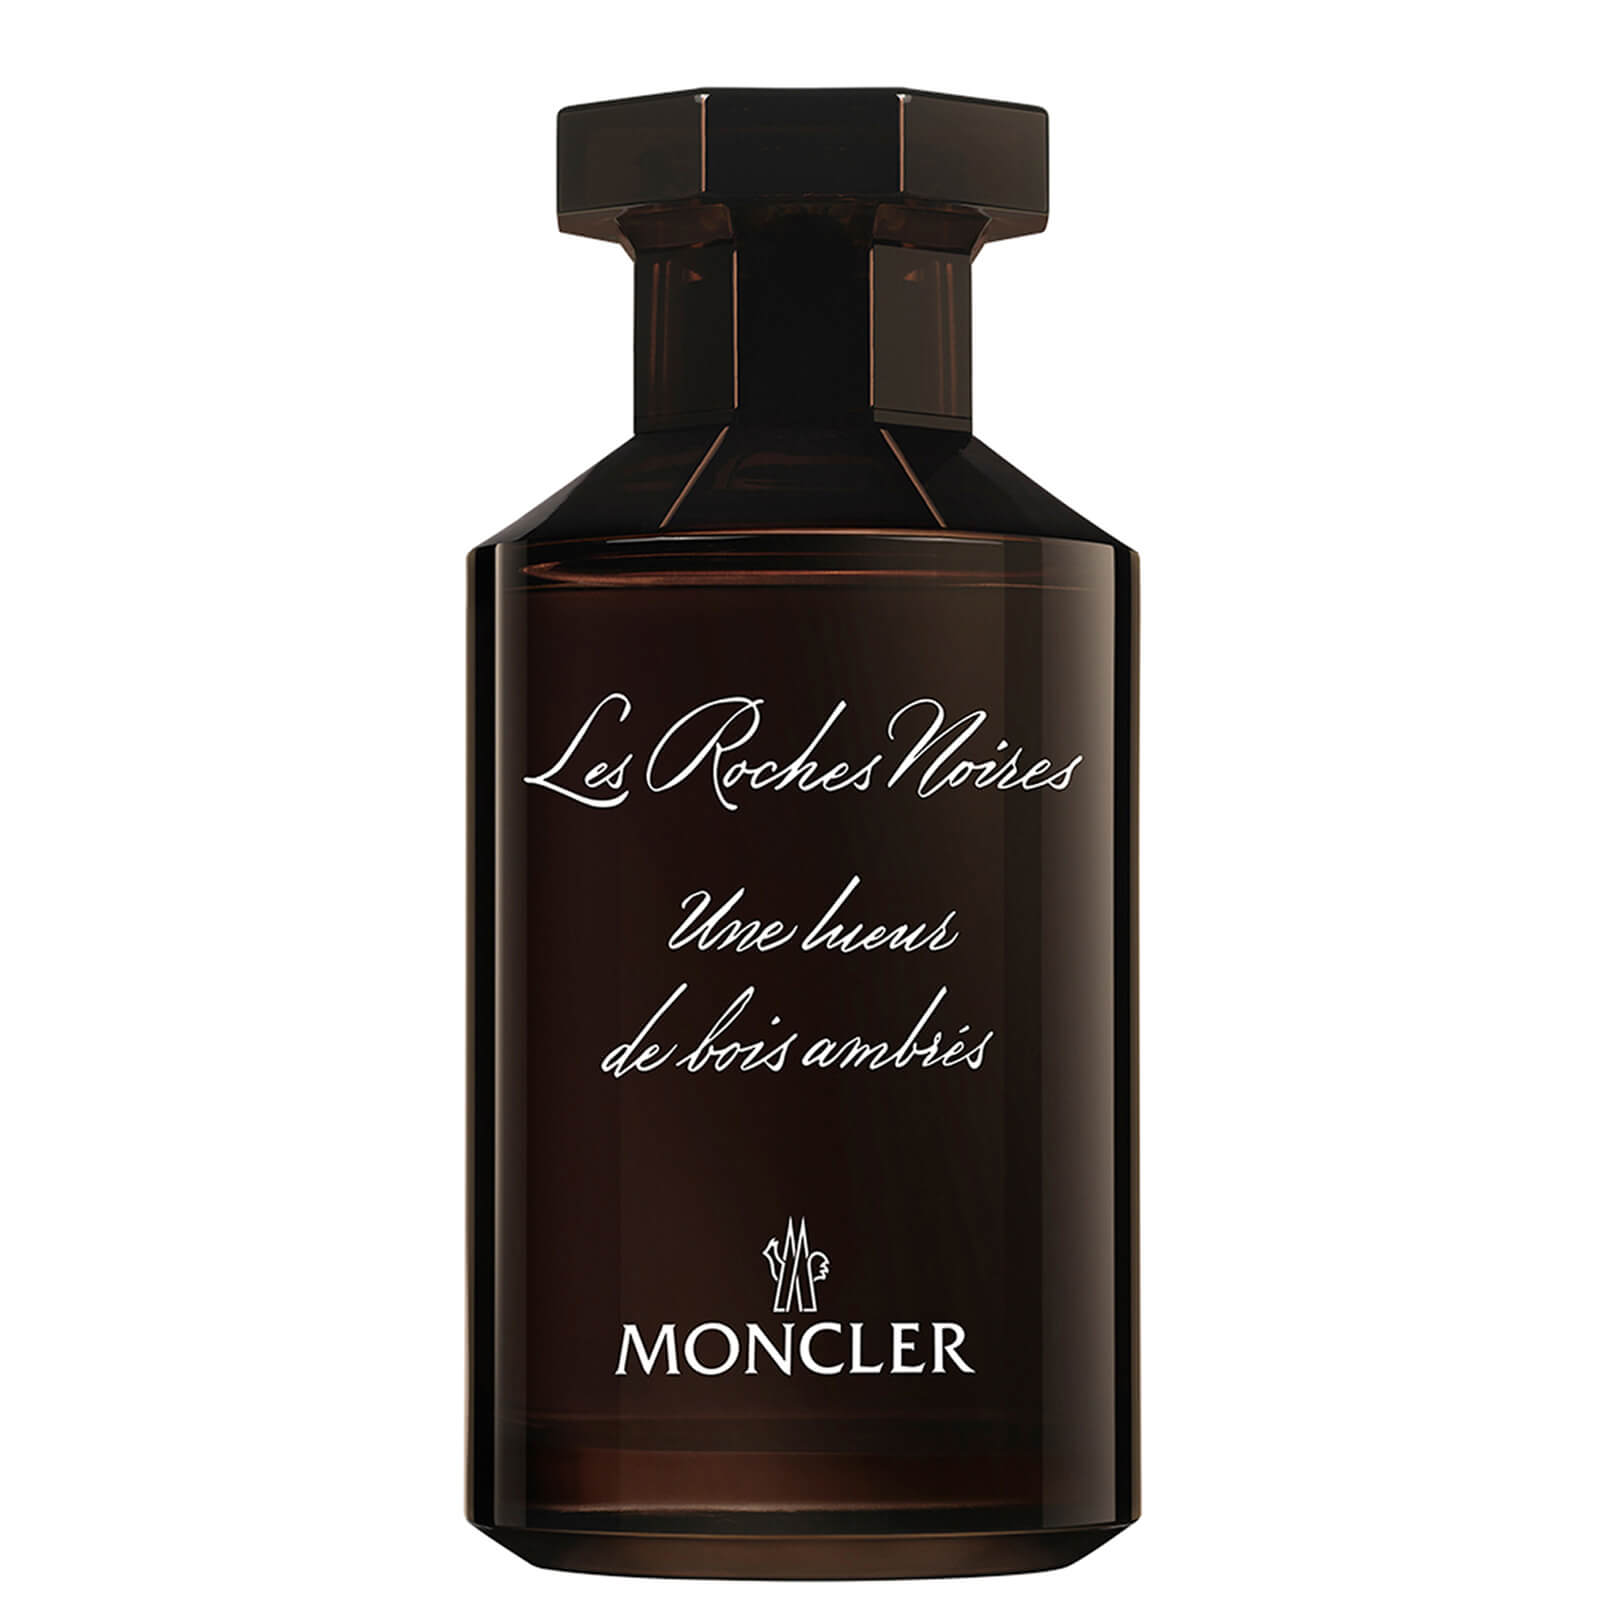 Moncler Les Sommets Collection Les Roches Noires Eau de Parfum 100ml